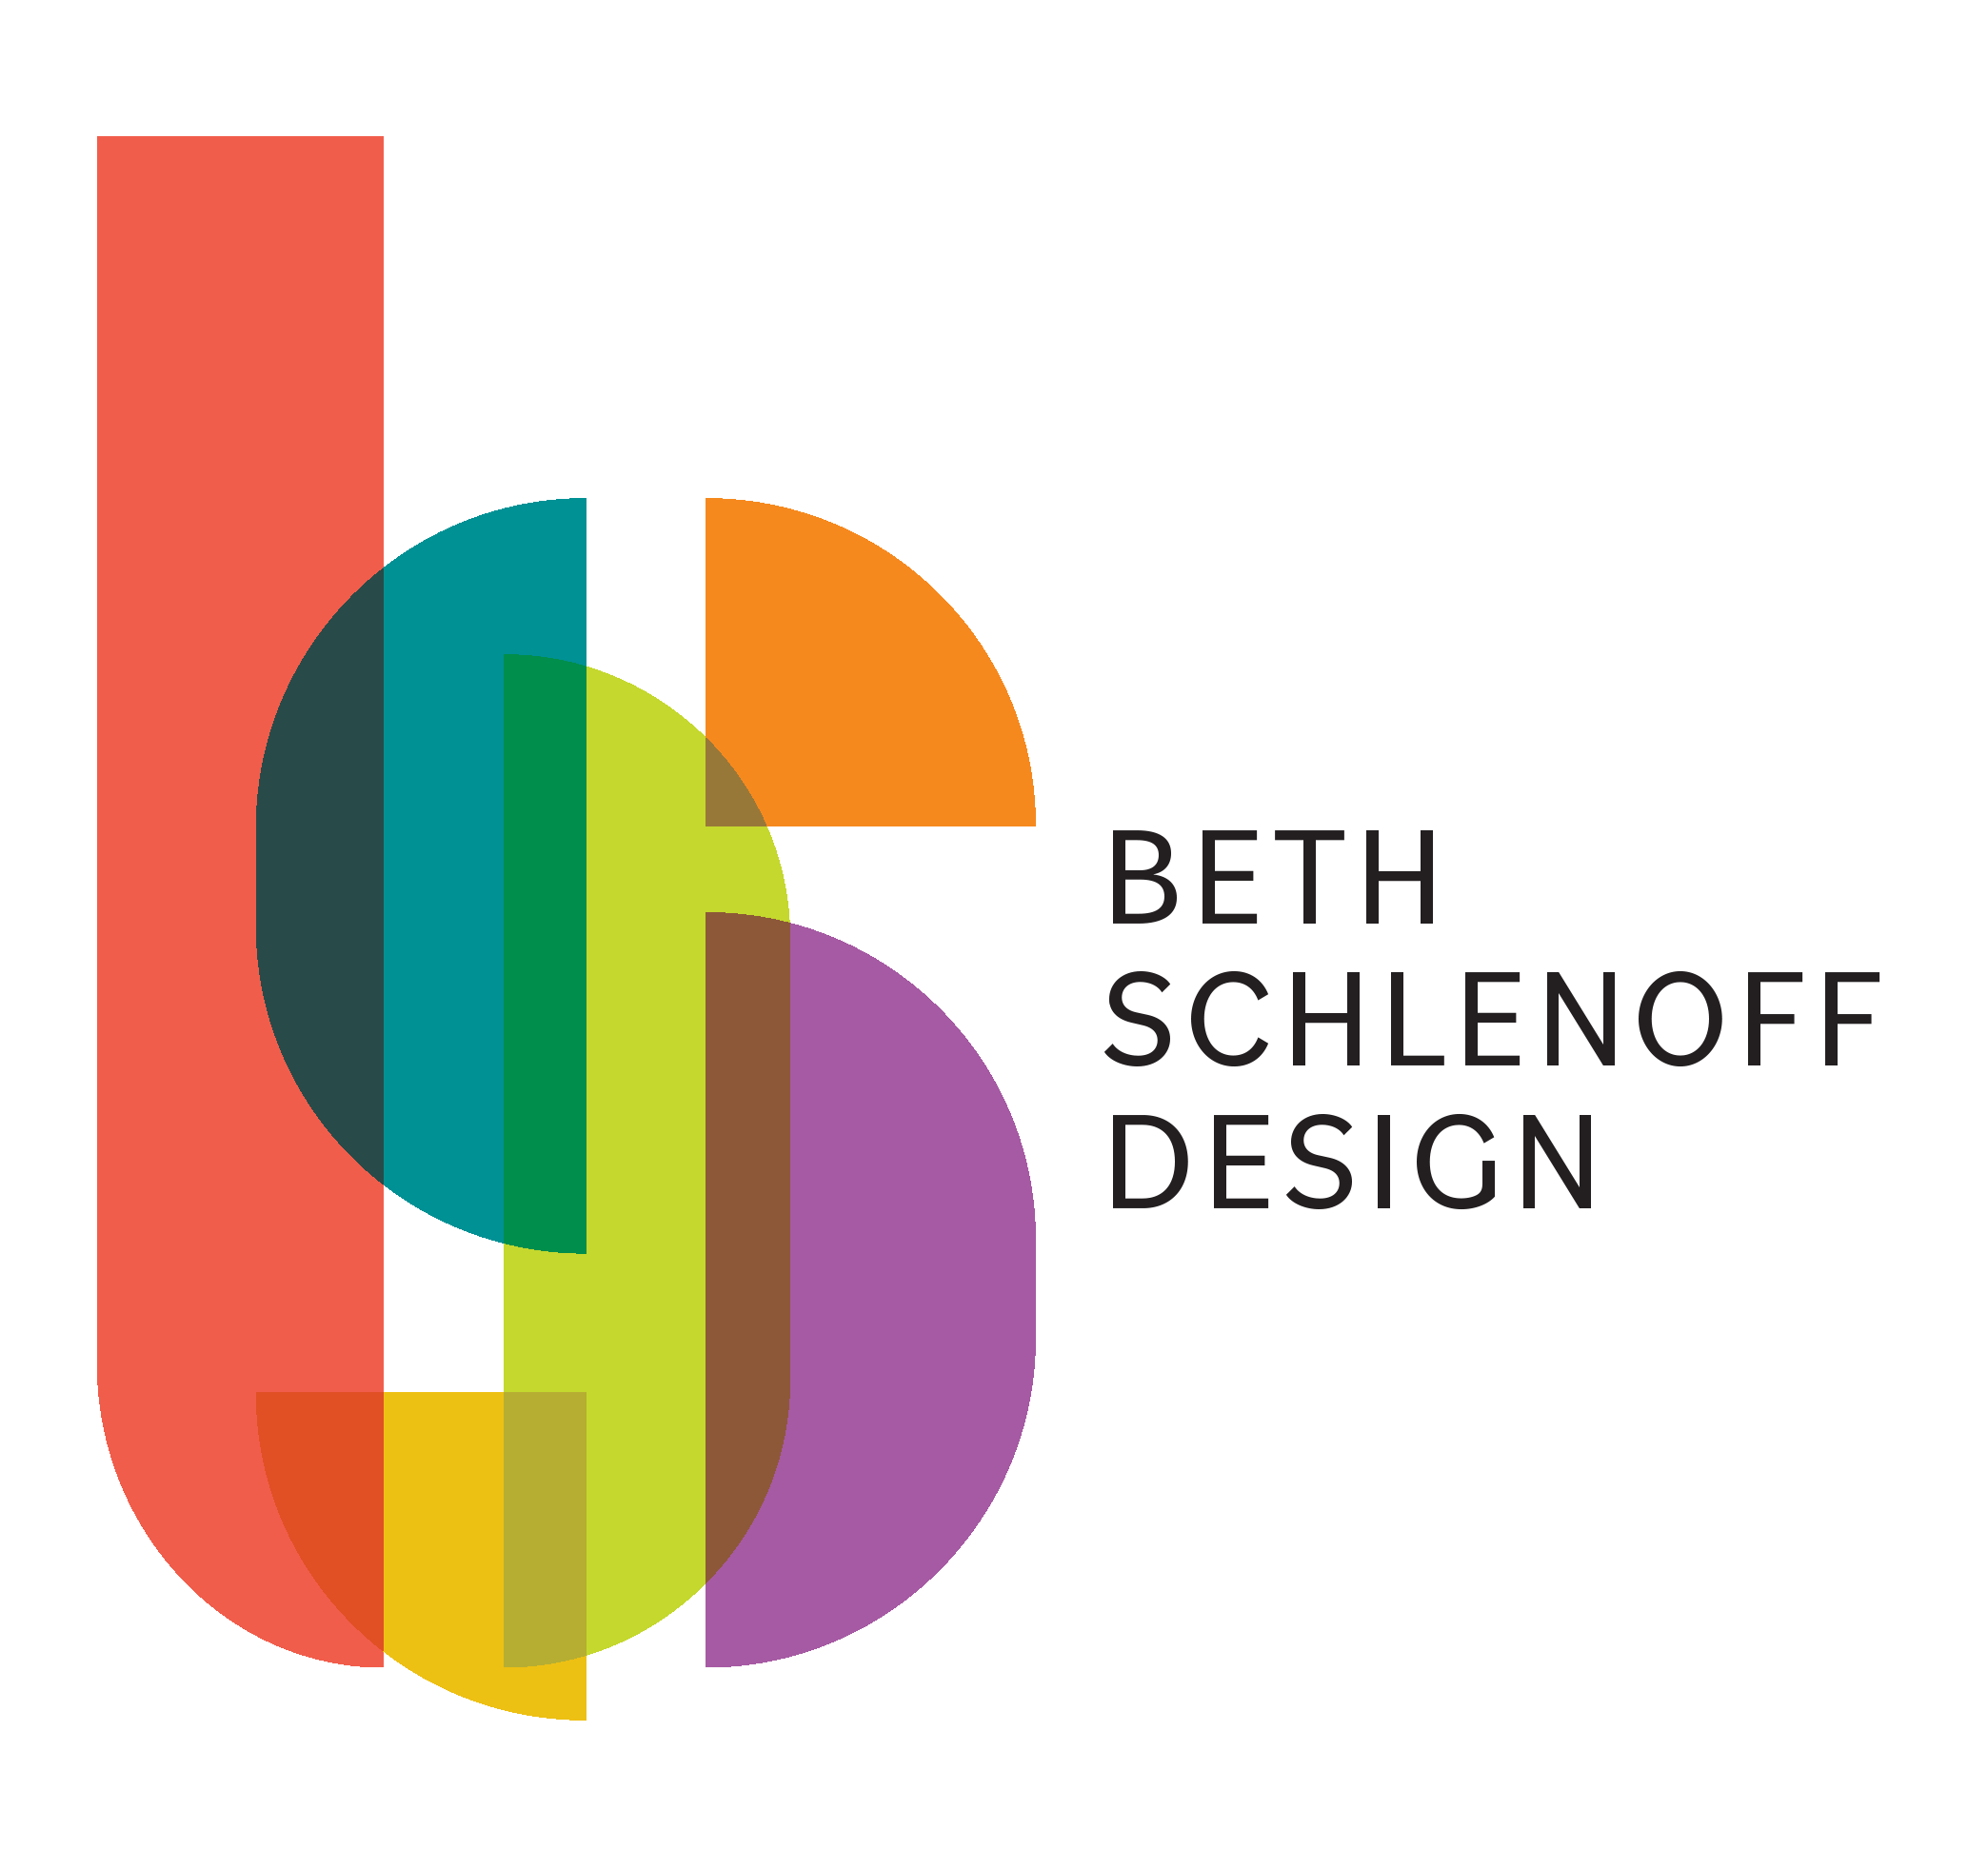 Beth Schlenoff Design